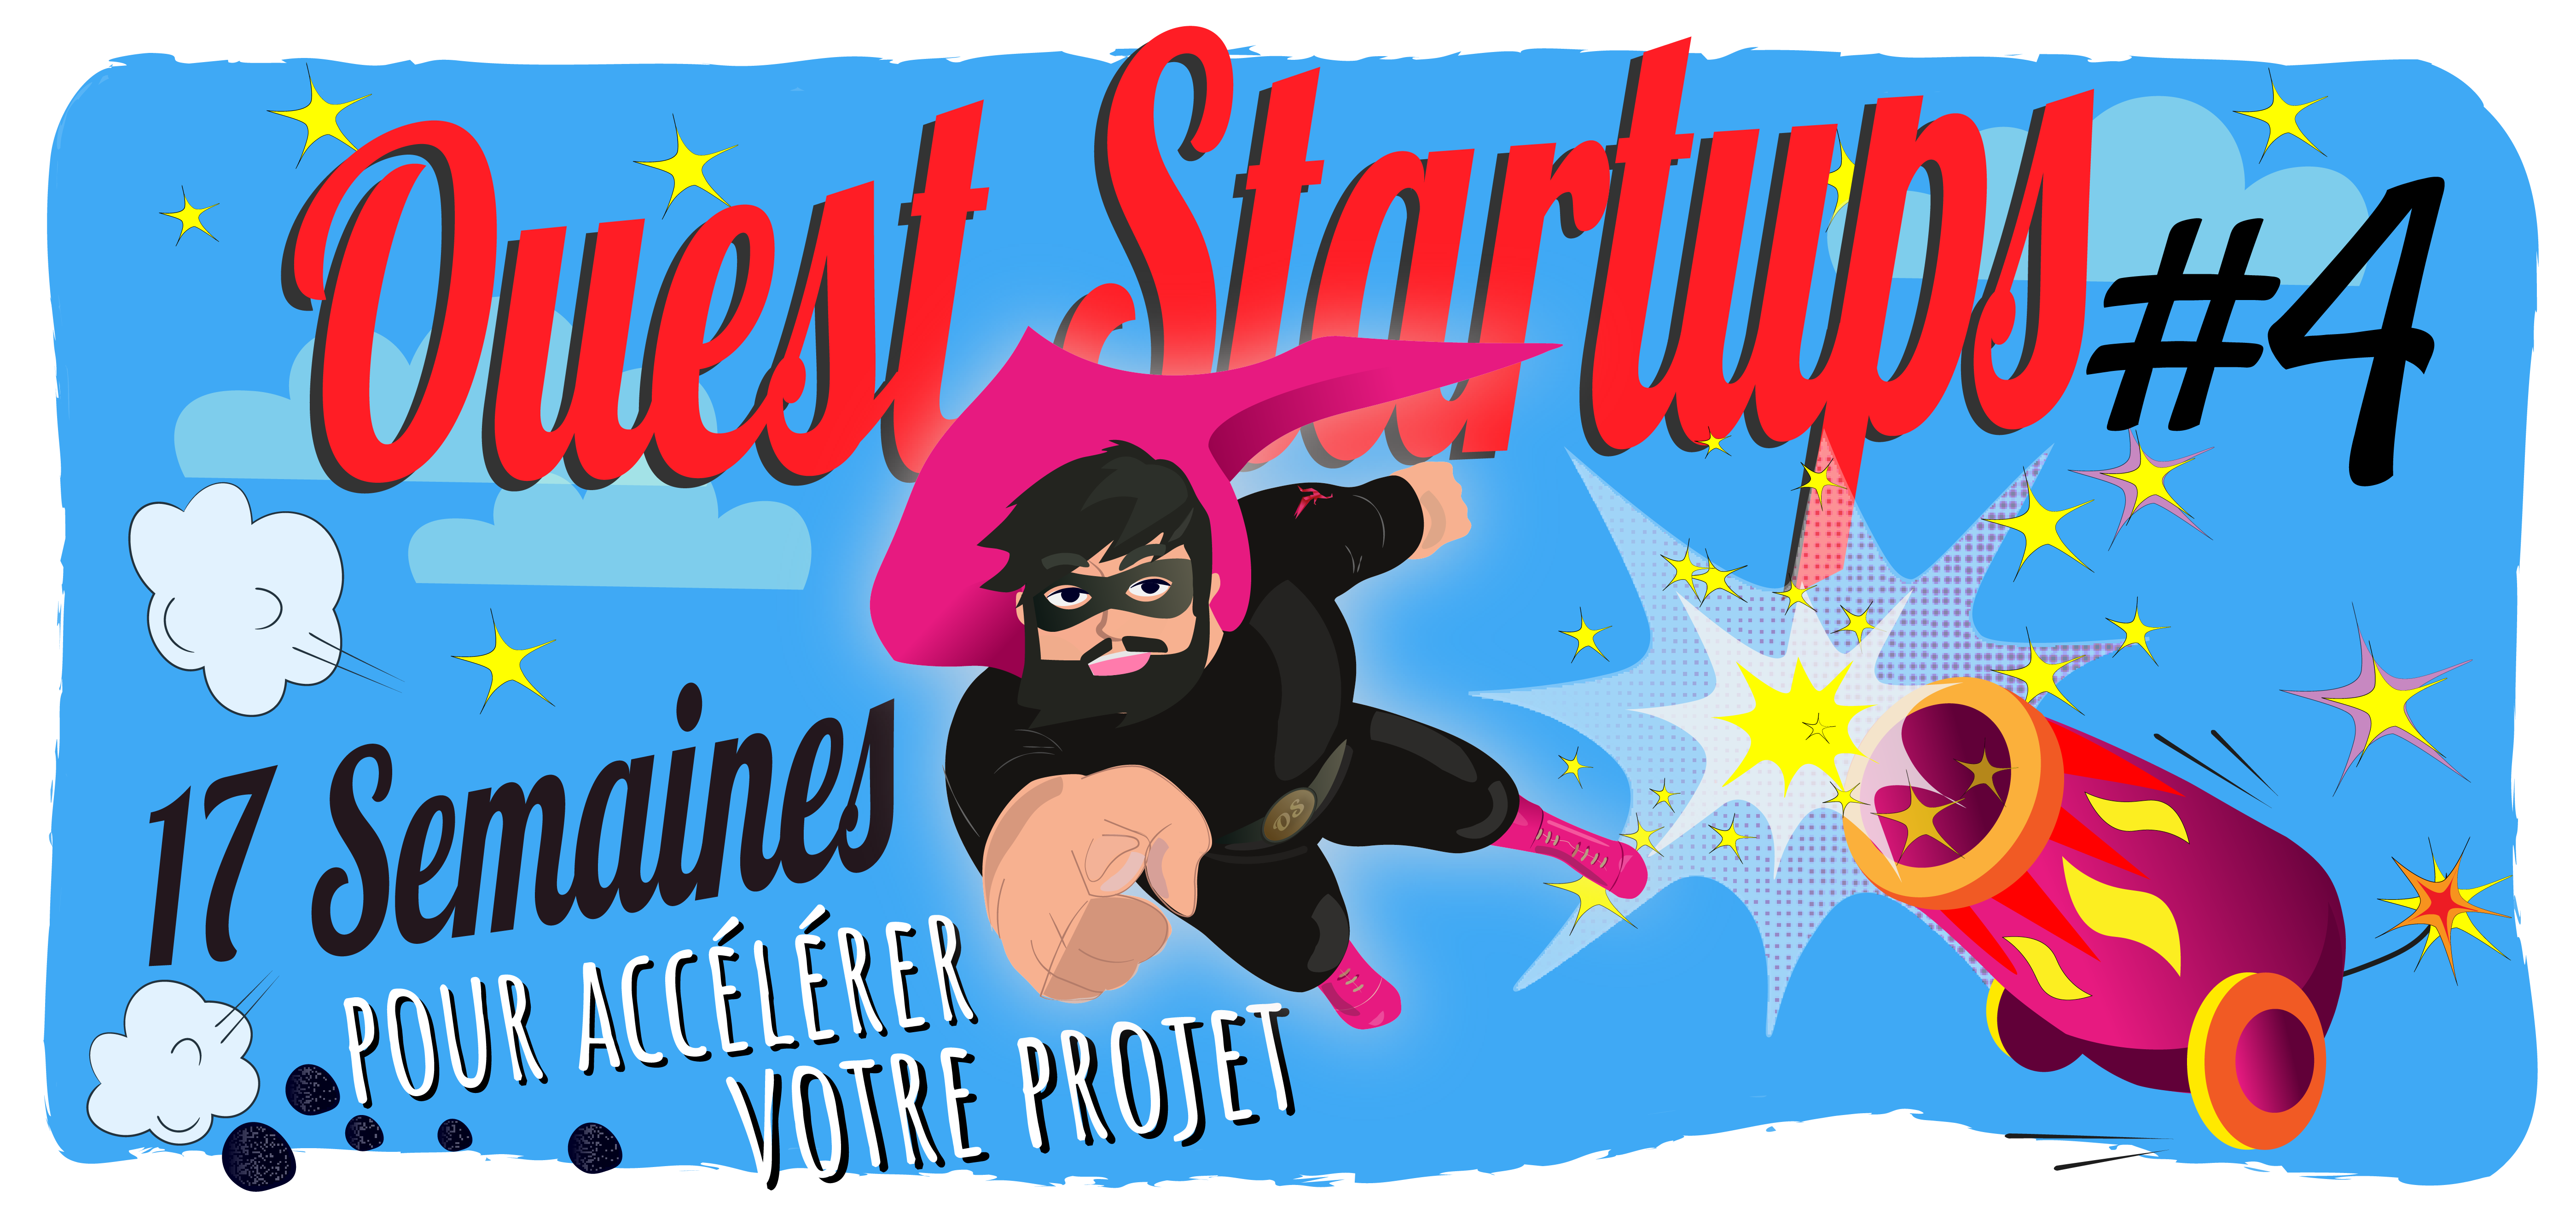 Ouest Startups #4 : 11 projets sélectionnés dont 5 brestois.